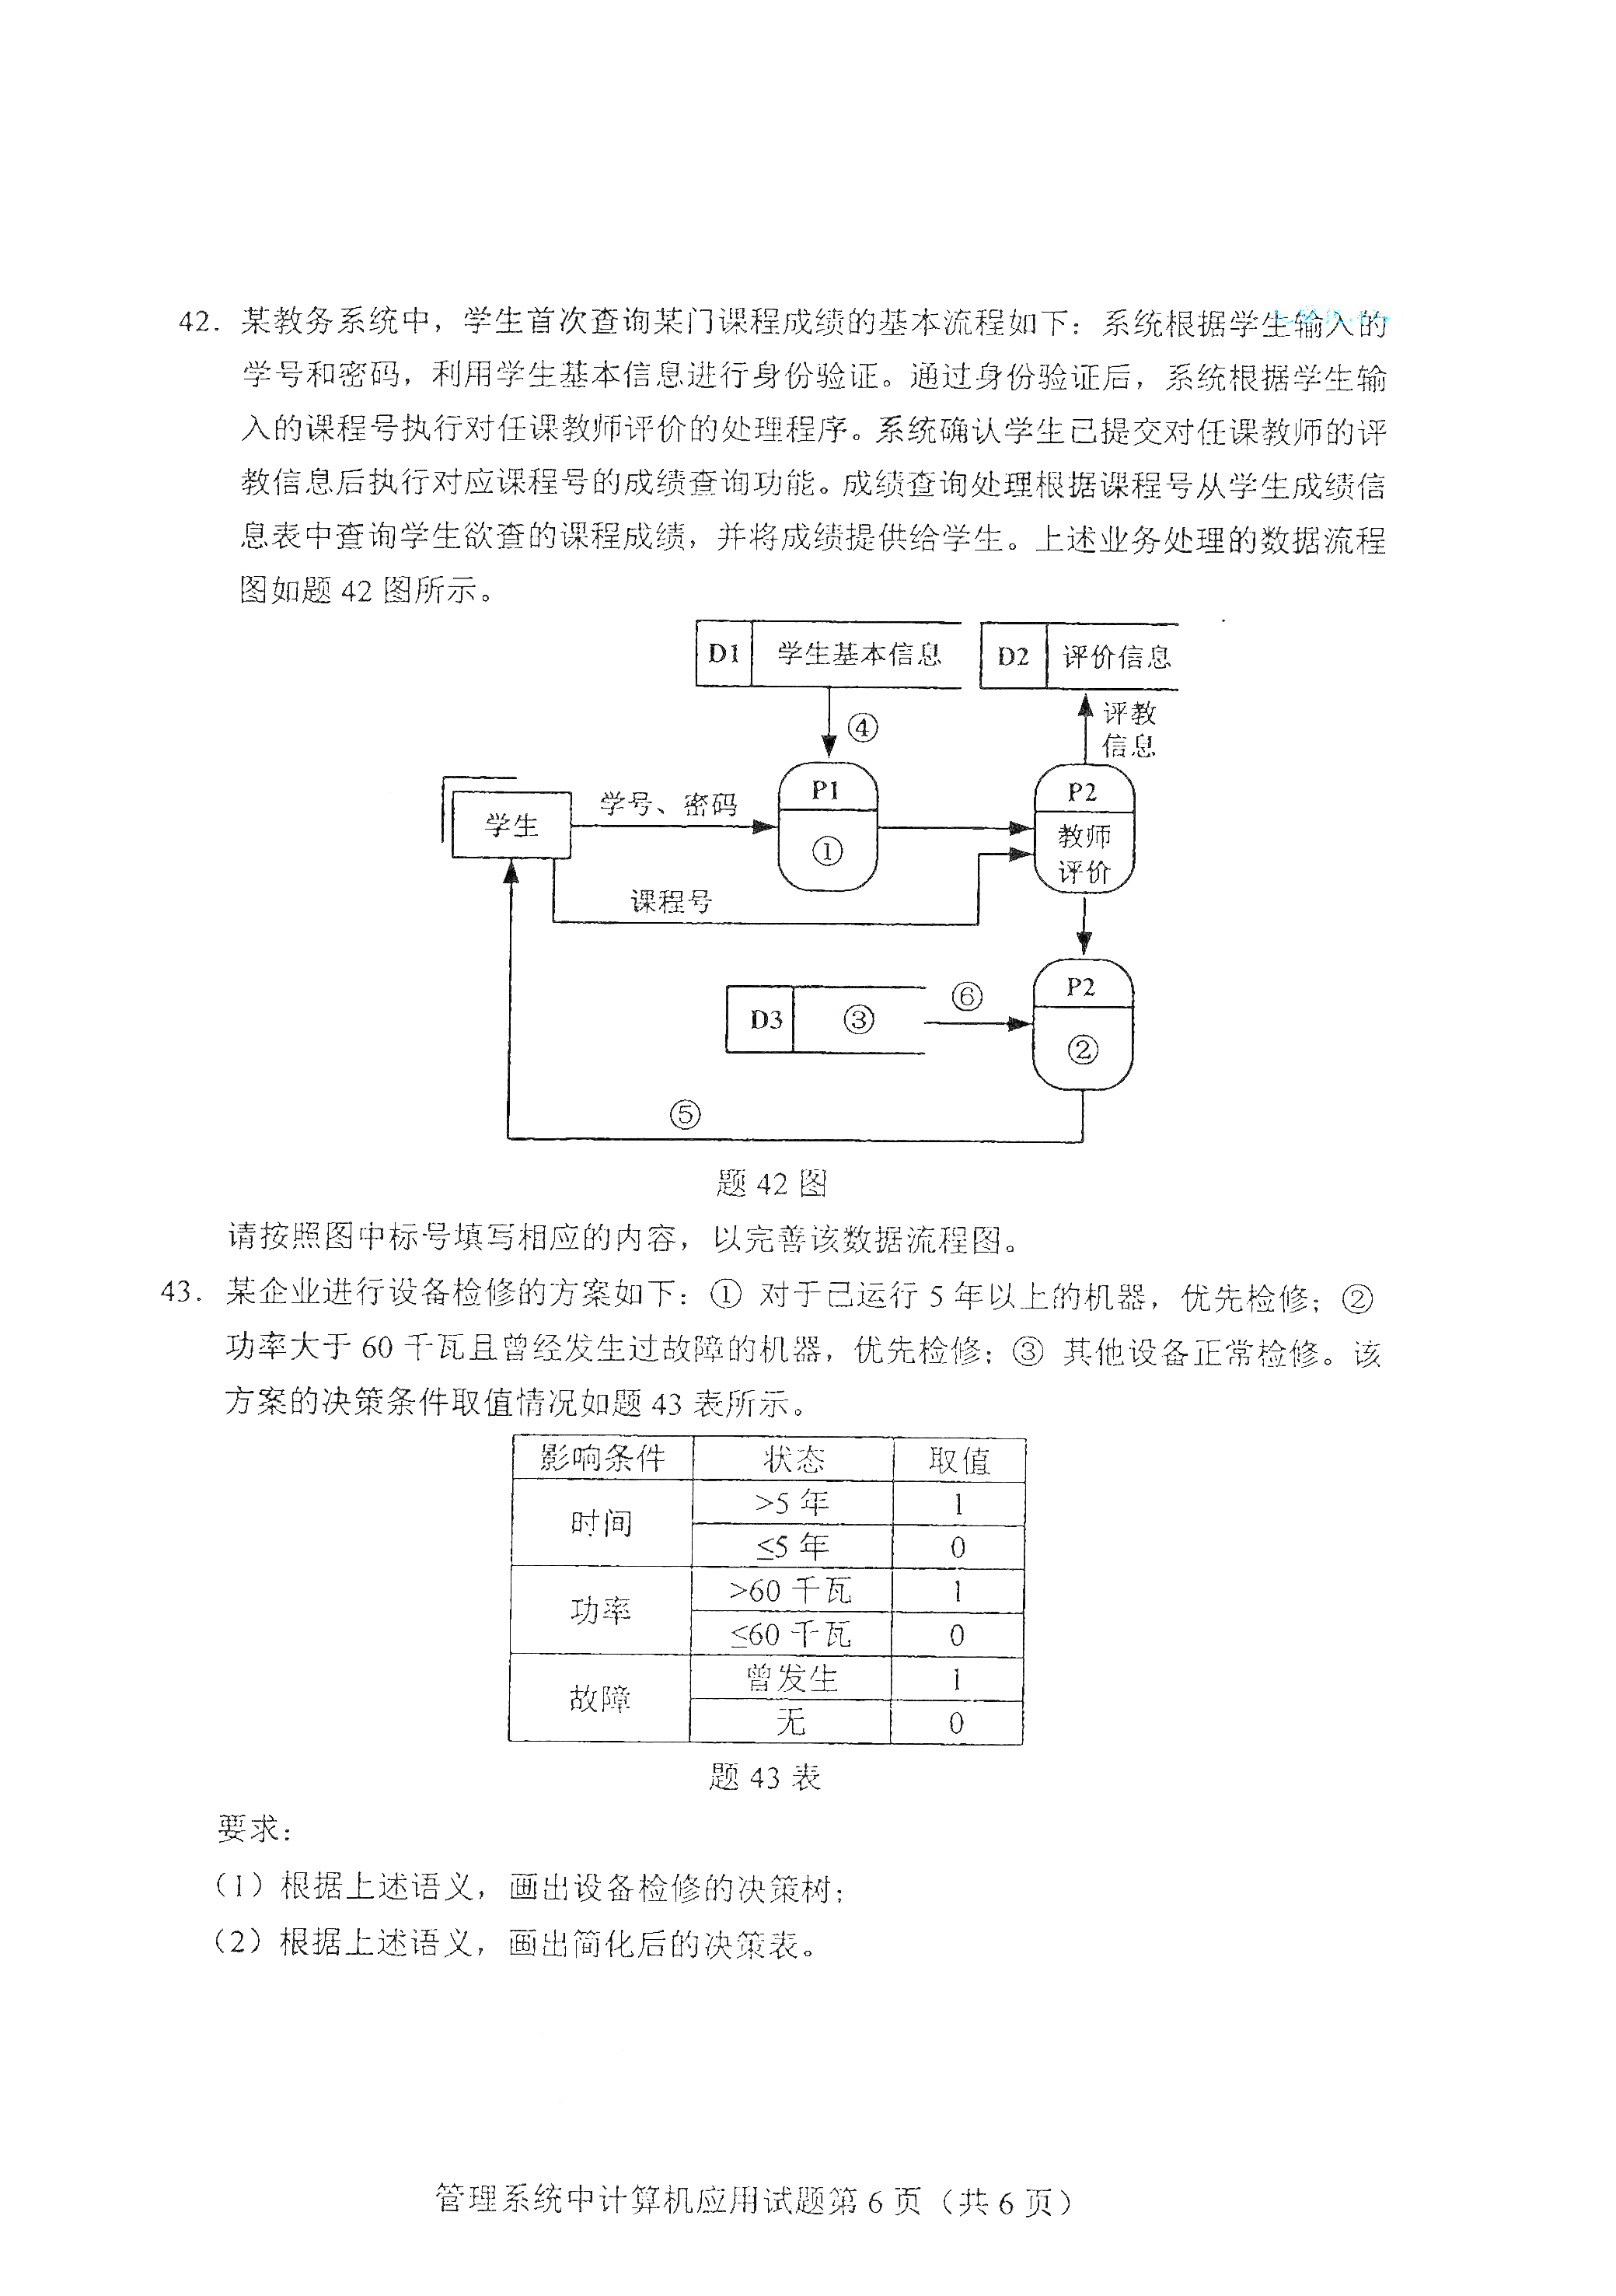 贵州00051管理系统中计算机应用真题试卷